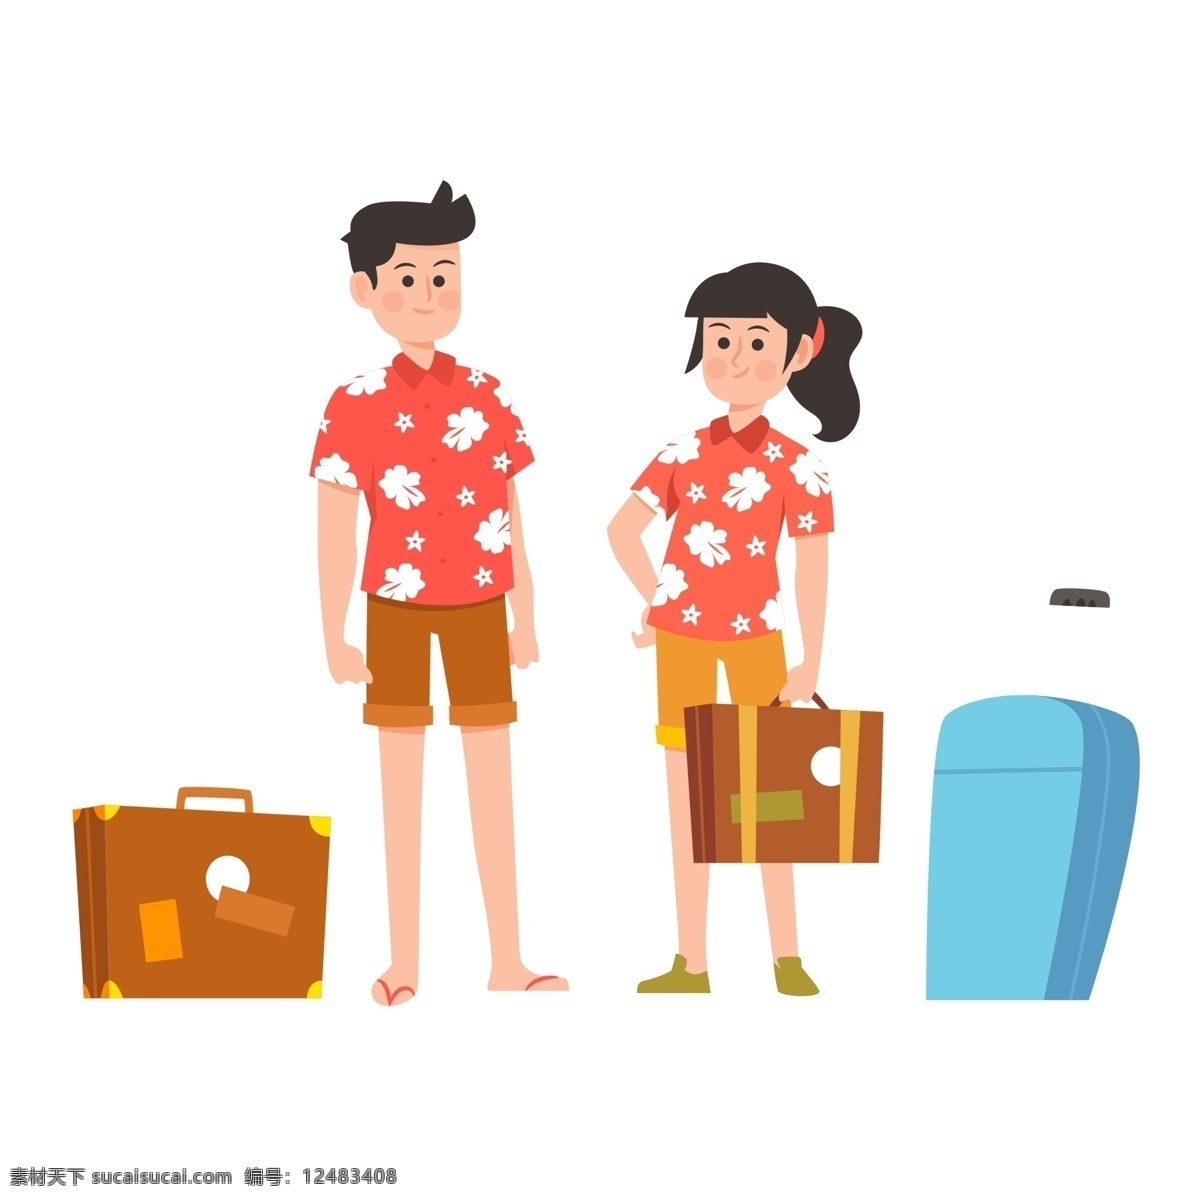 可爱 旅游 旅行 海外 度假 人物 可爱的人物 旅游人物 旅游旅行 海外度假 插画人物 banner 卡通人物